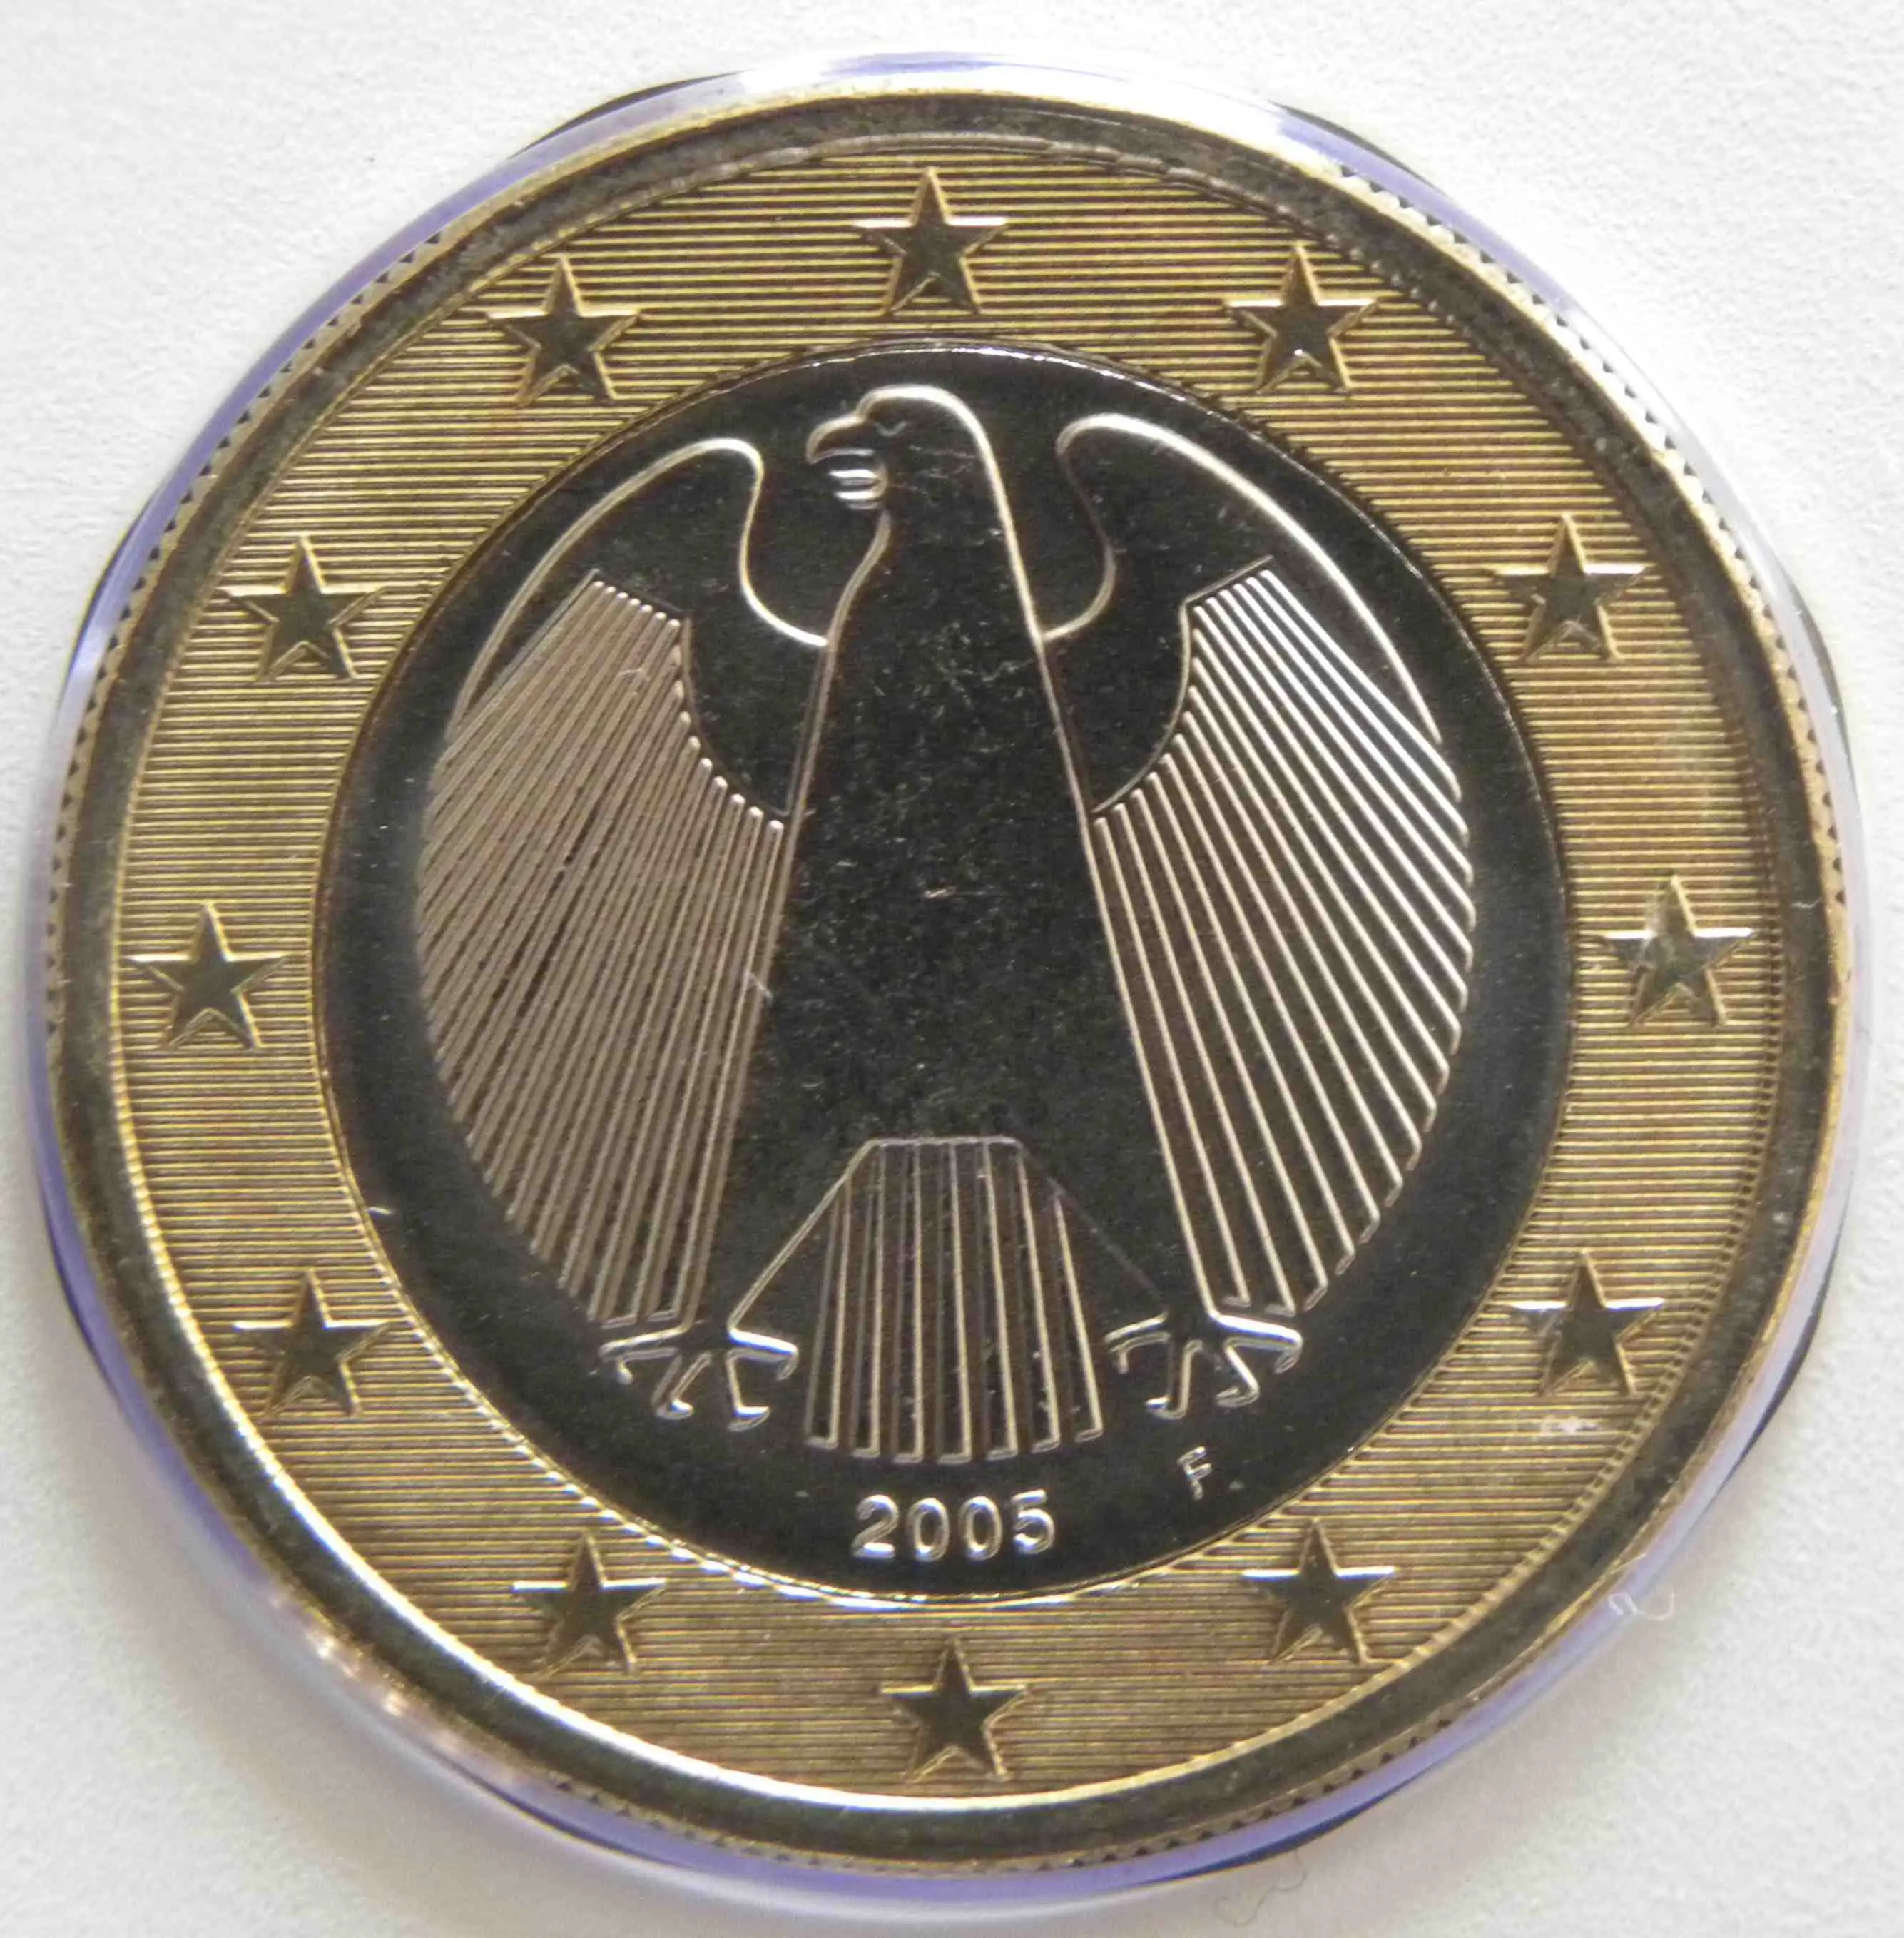 Deutschland 1 Euro Münze 2005 F - euro-muenzen.tv - Der Online